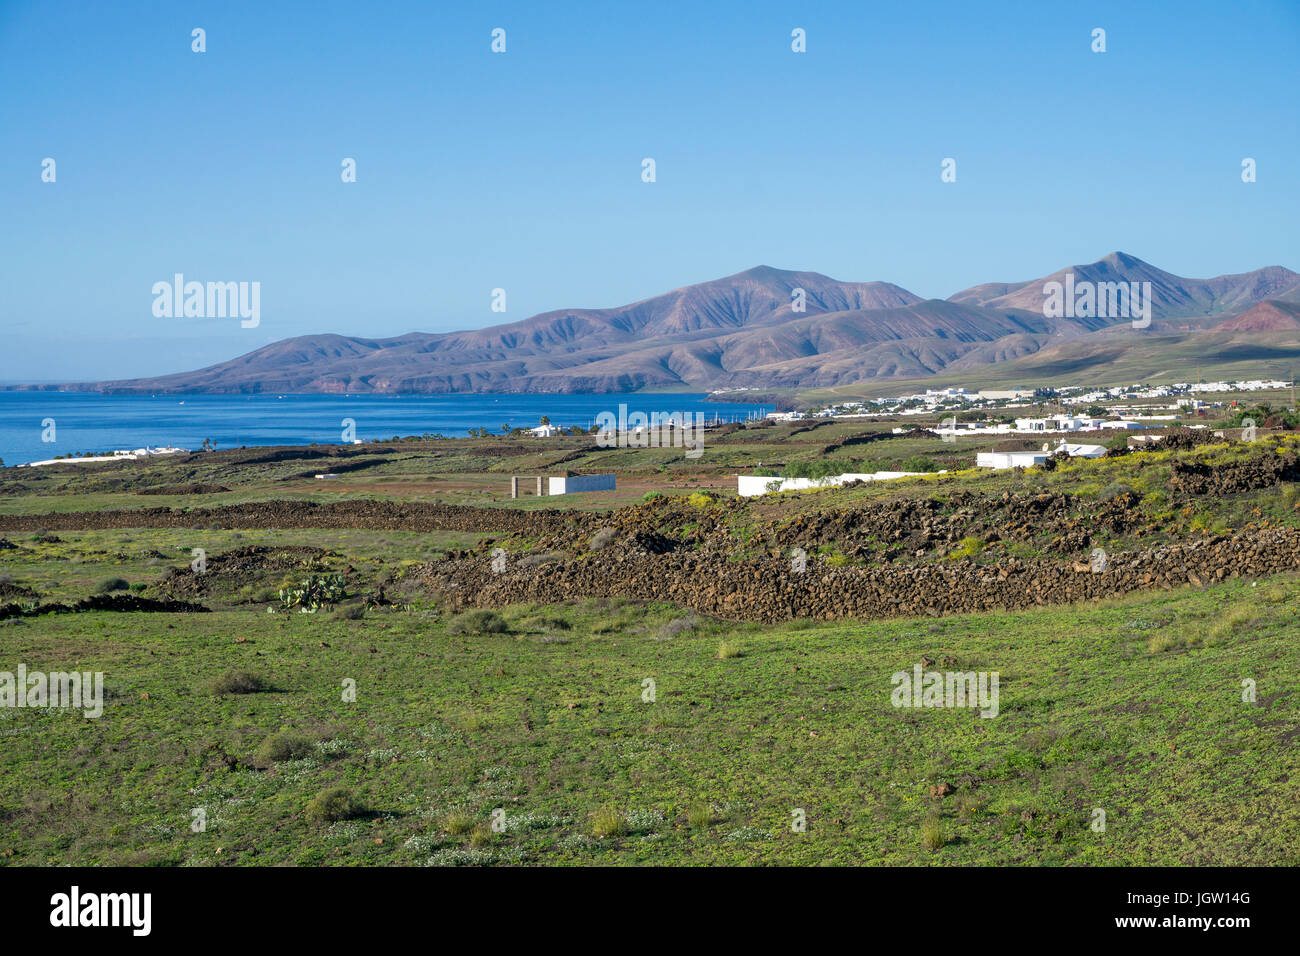 Il paesaggio della costa tra Puerto del Carmen e Puerto Calero, Lanzarote, Isole canarie, Spagna, Europa Foto Stock